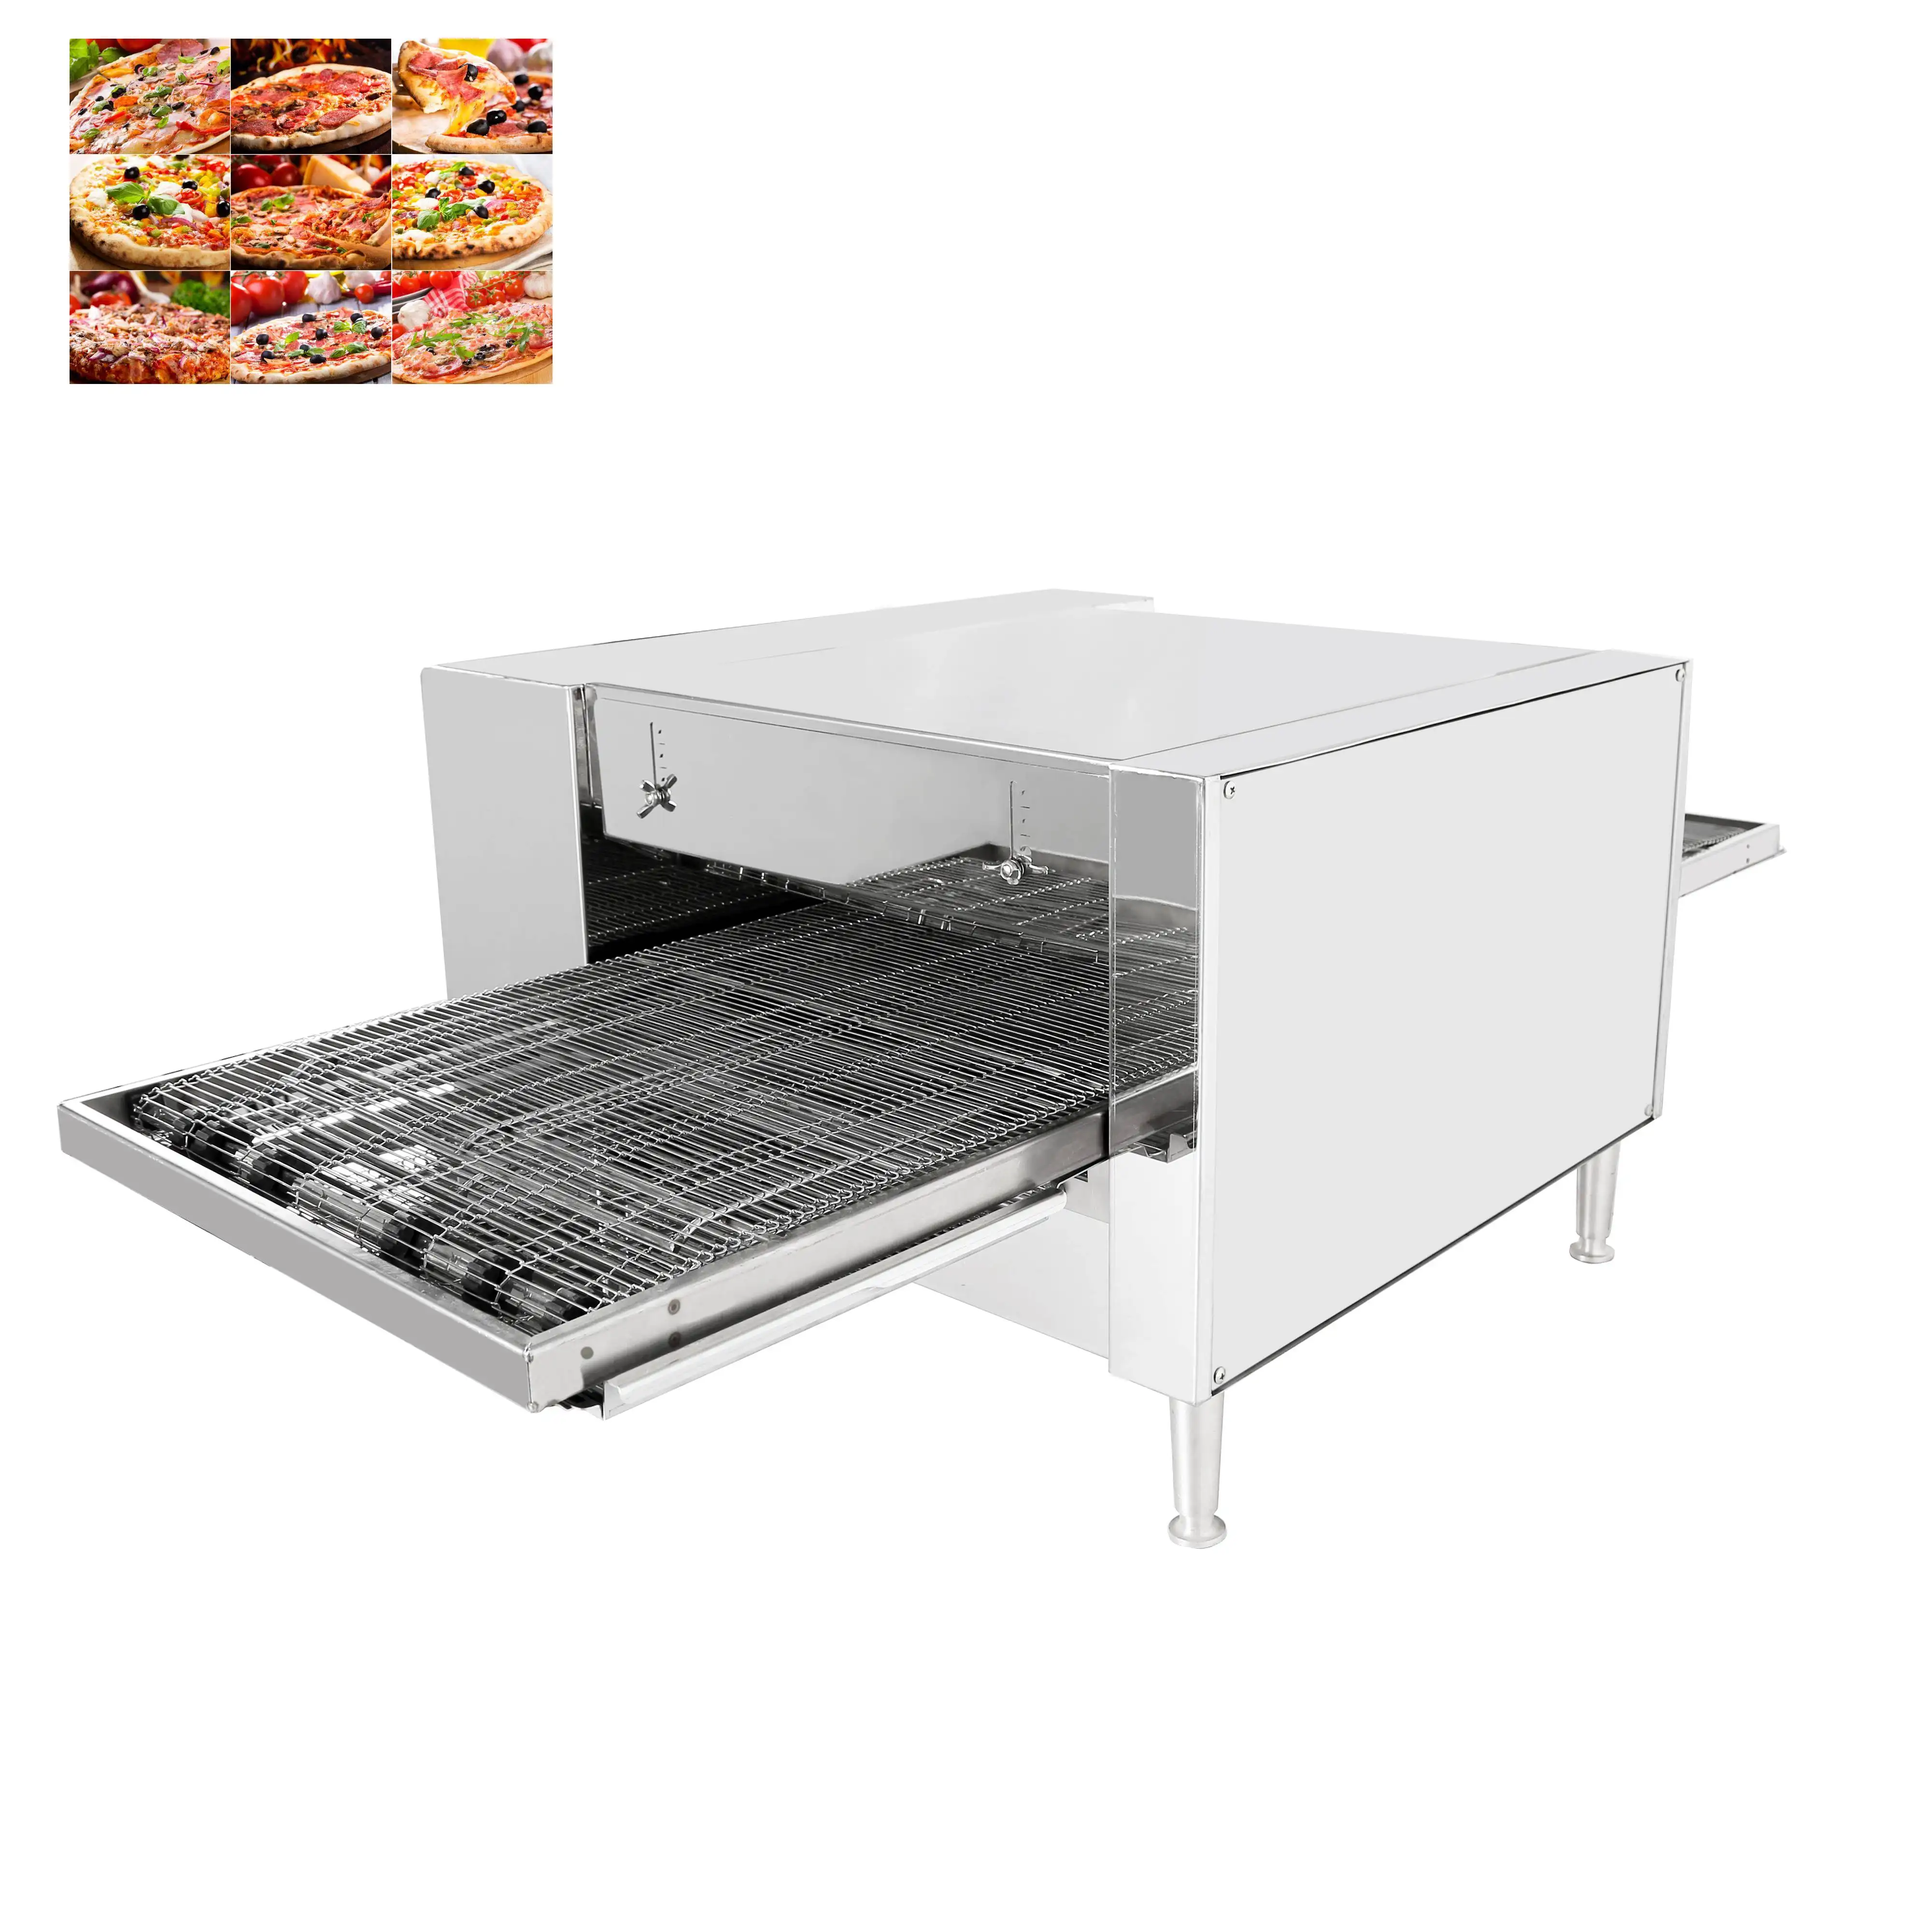 automatische tandoor mini pizza backmaschine ofen hersteller mit konkurrenzfähigem preis und niedrigem moq